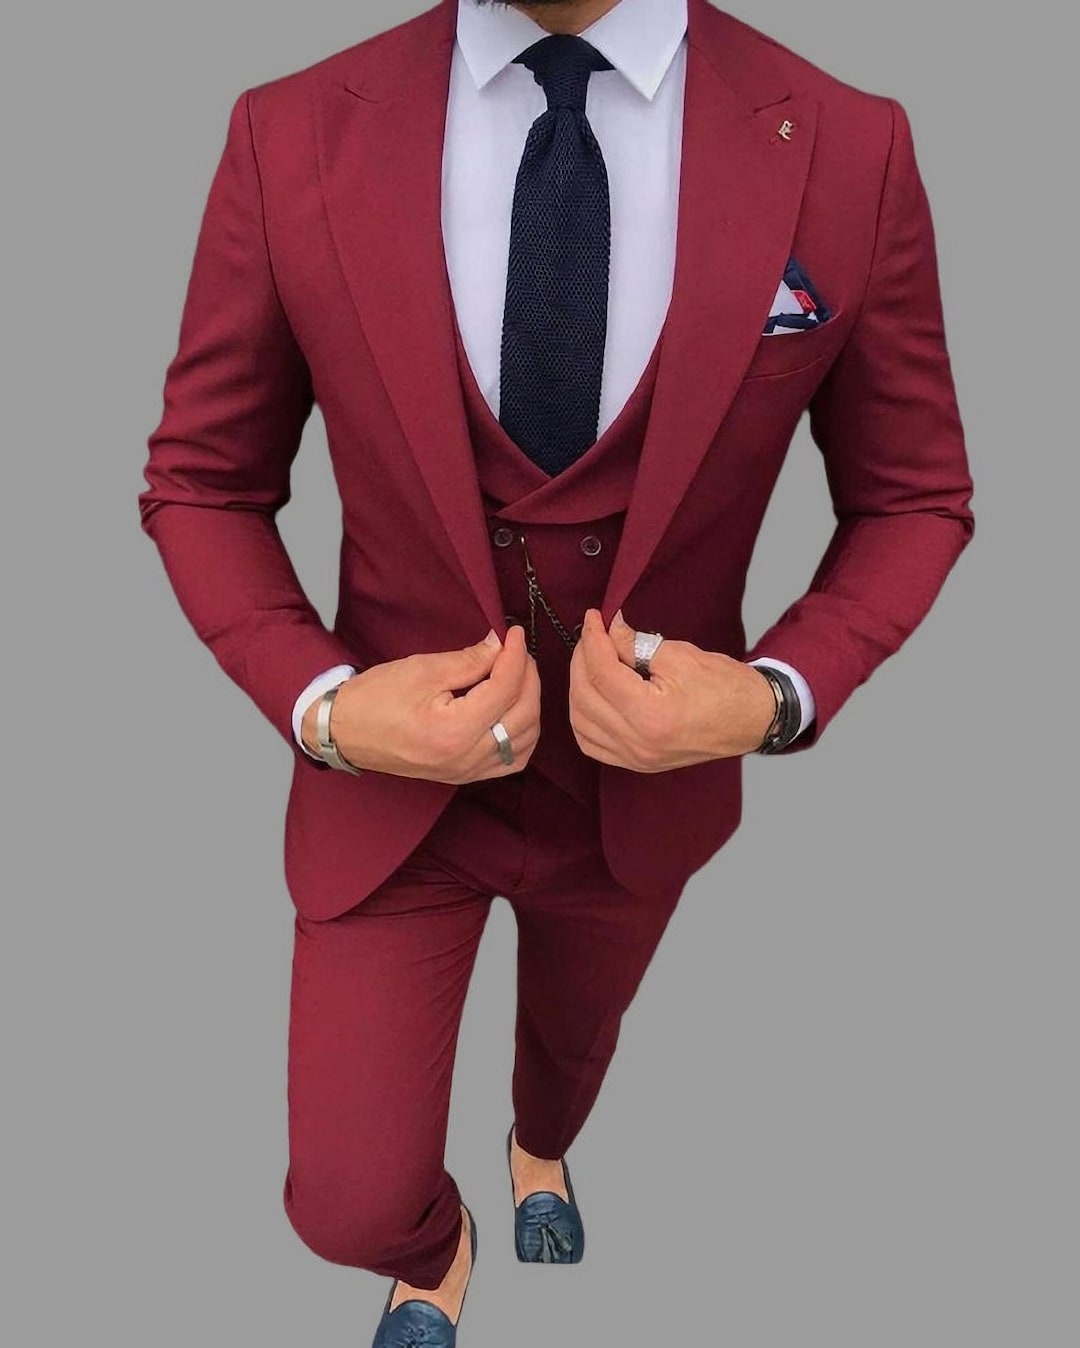 Men Suits Maroon 3 Piece Beach Wedding Suit Groomsmen Suit - Etsy